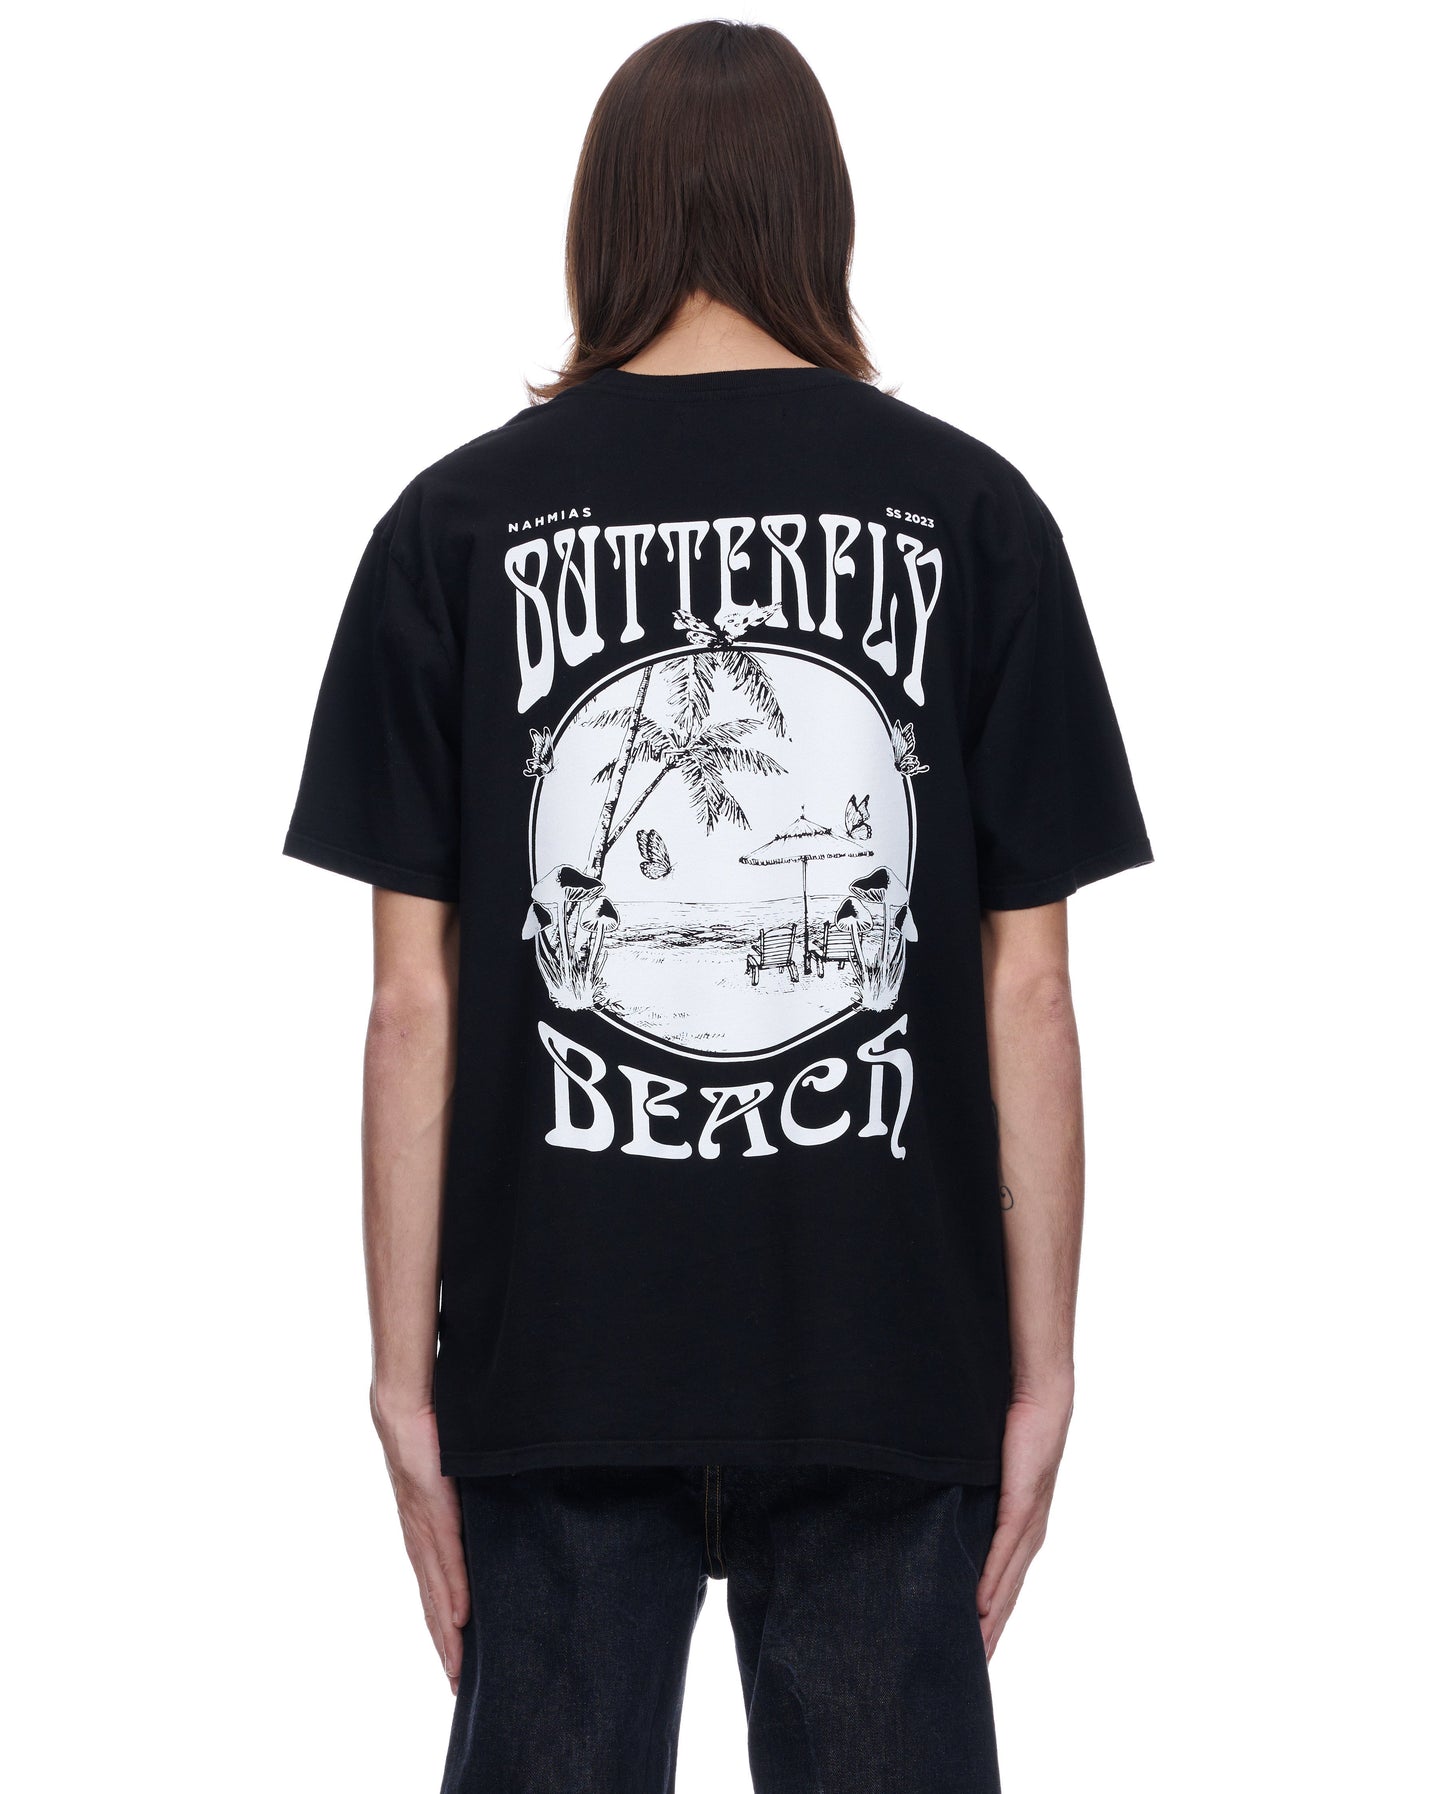 Butterfly Beach T-Shirt